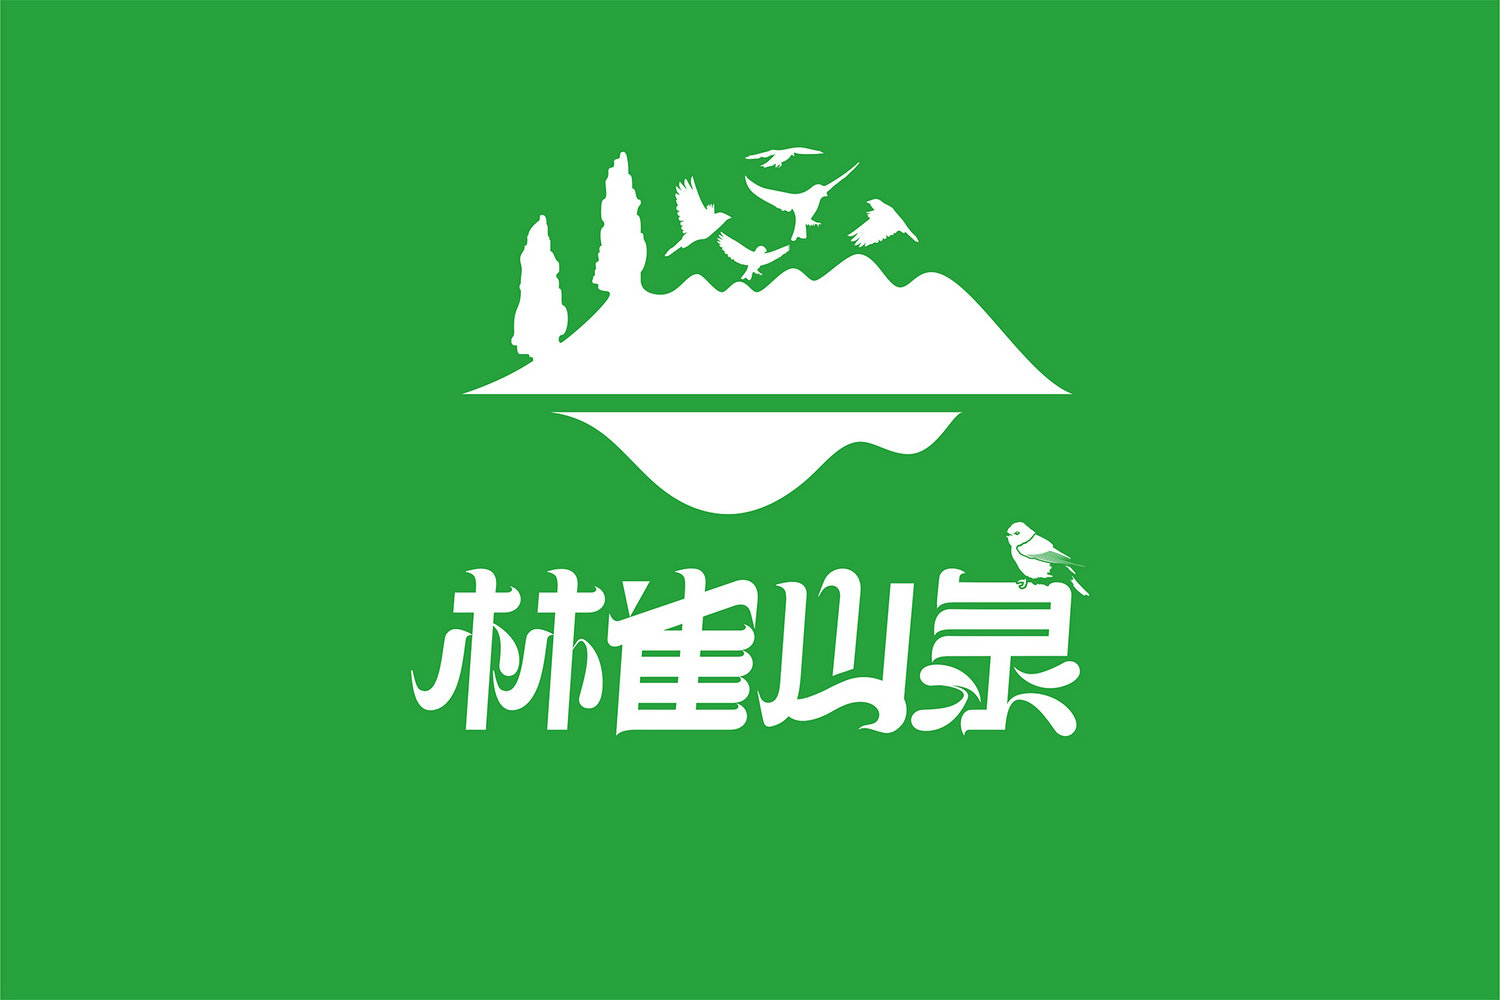 林雀山泉logo设计2.jpg